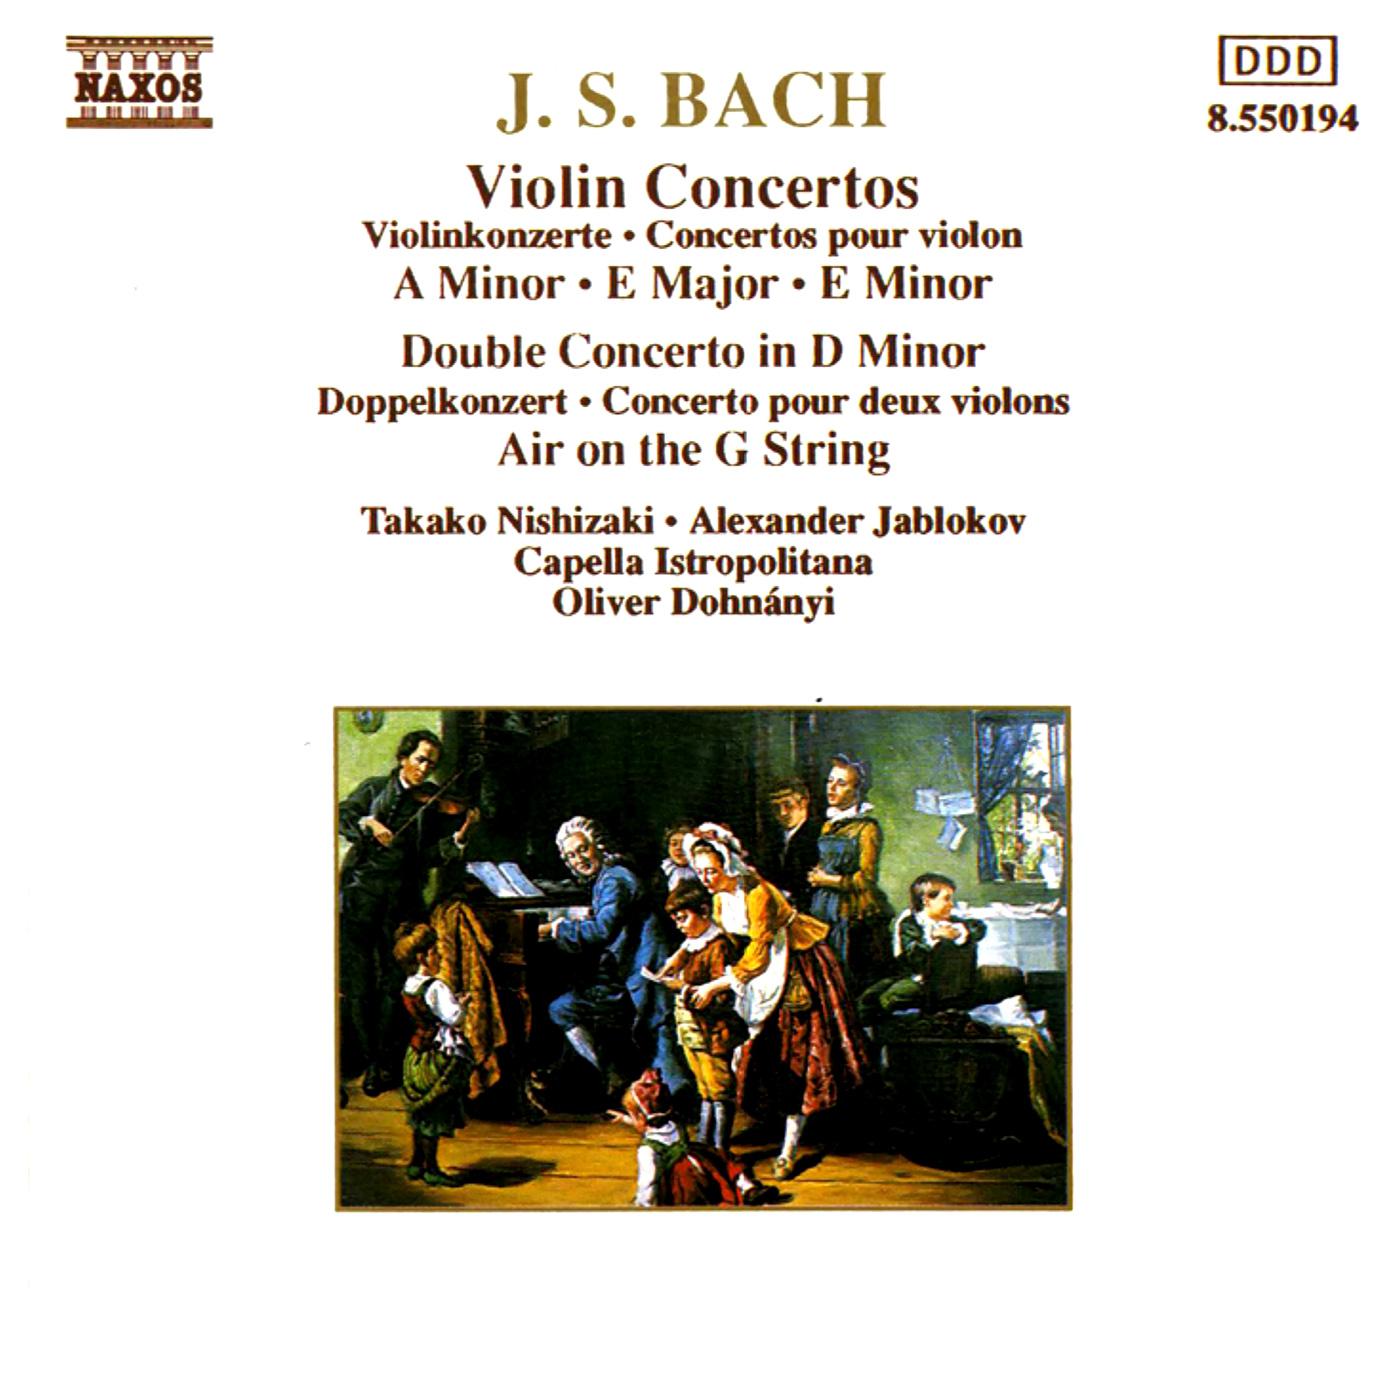 Concerto for 2 Violins in D Minor, BWV 1043:I. Vivace